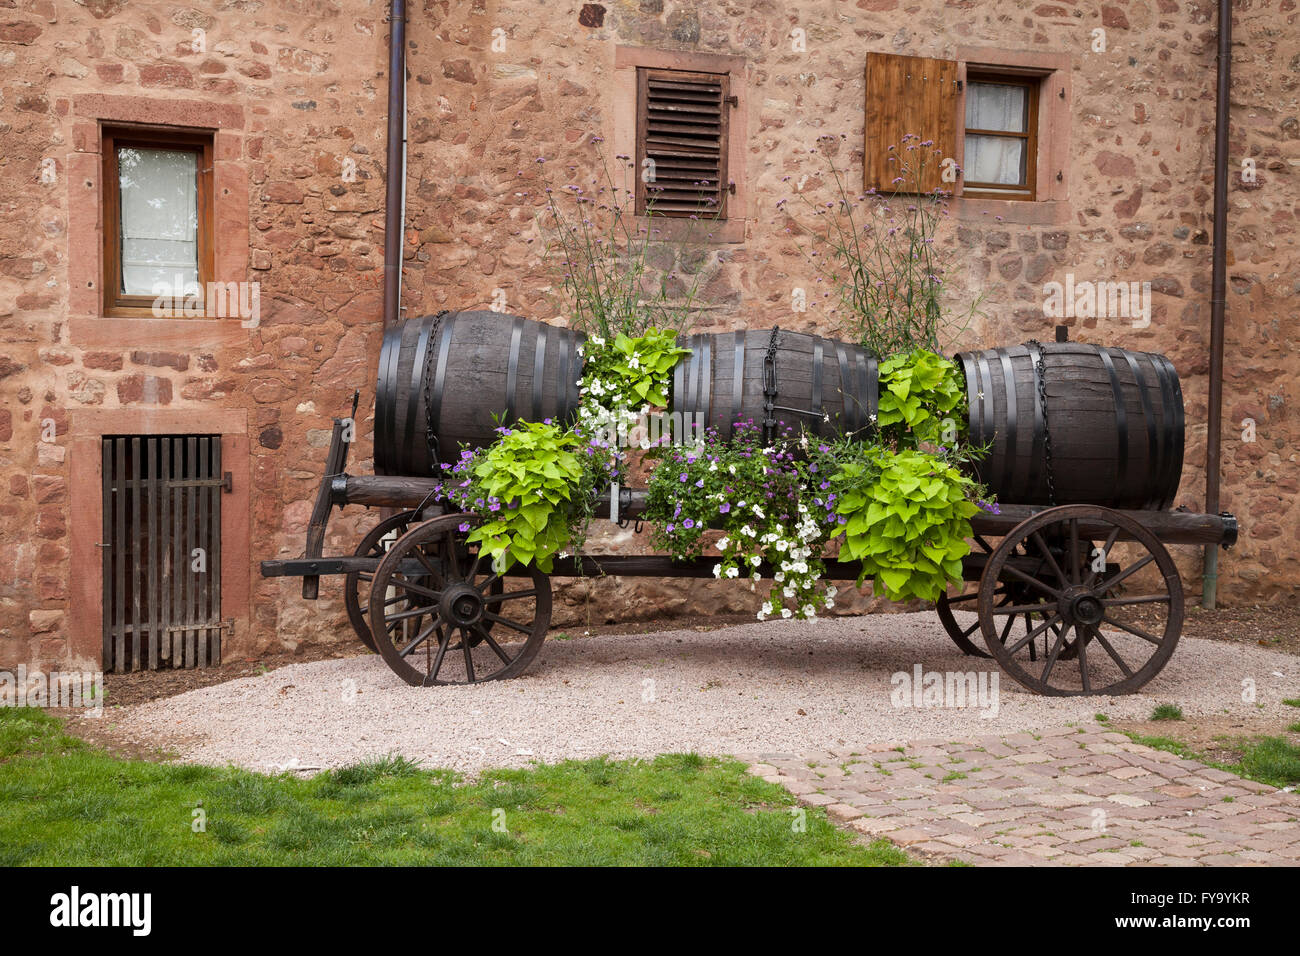 Panier en bois avec des tonneaux de vin, Riquewihr, Alsace, France Banque D'Images